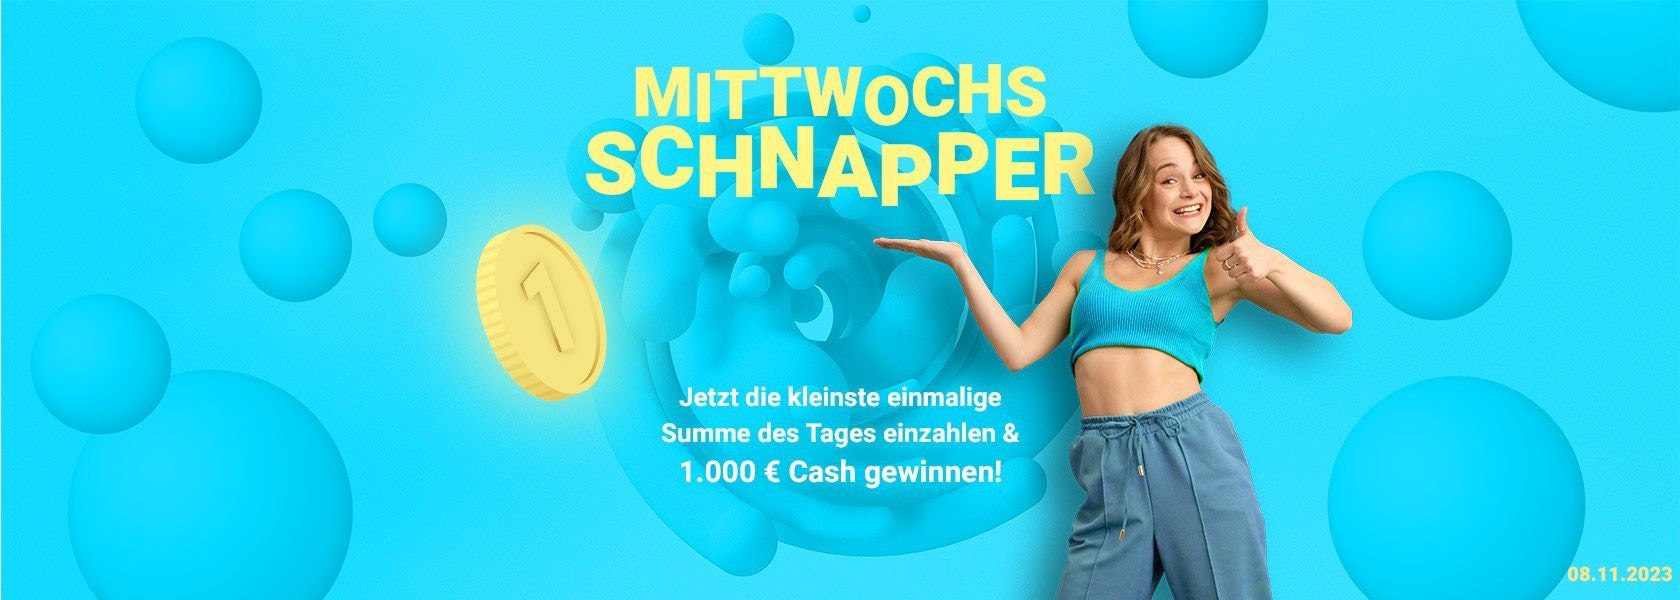 mittwochs-schnapper-bbo-081123